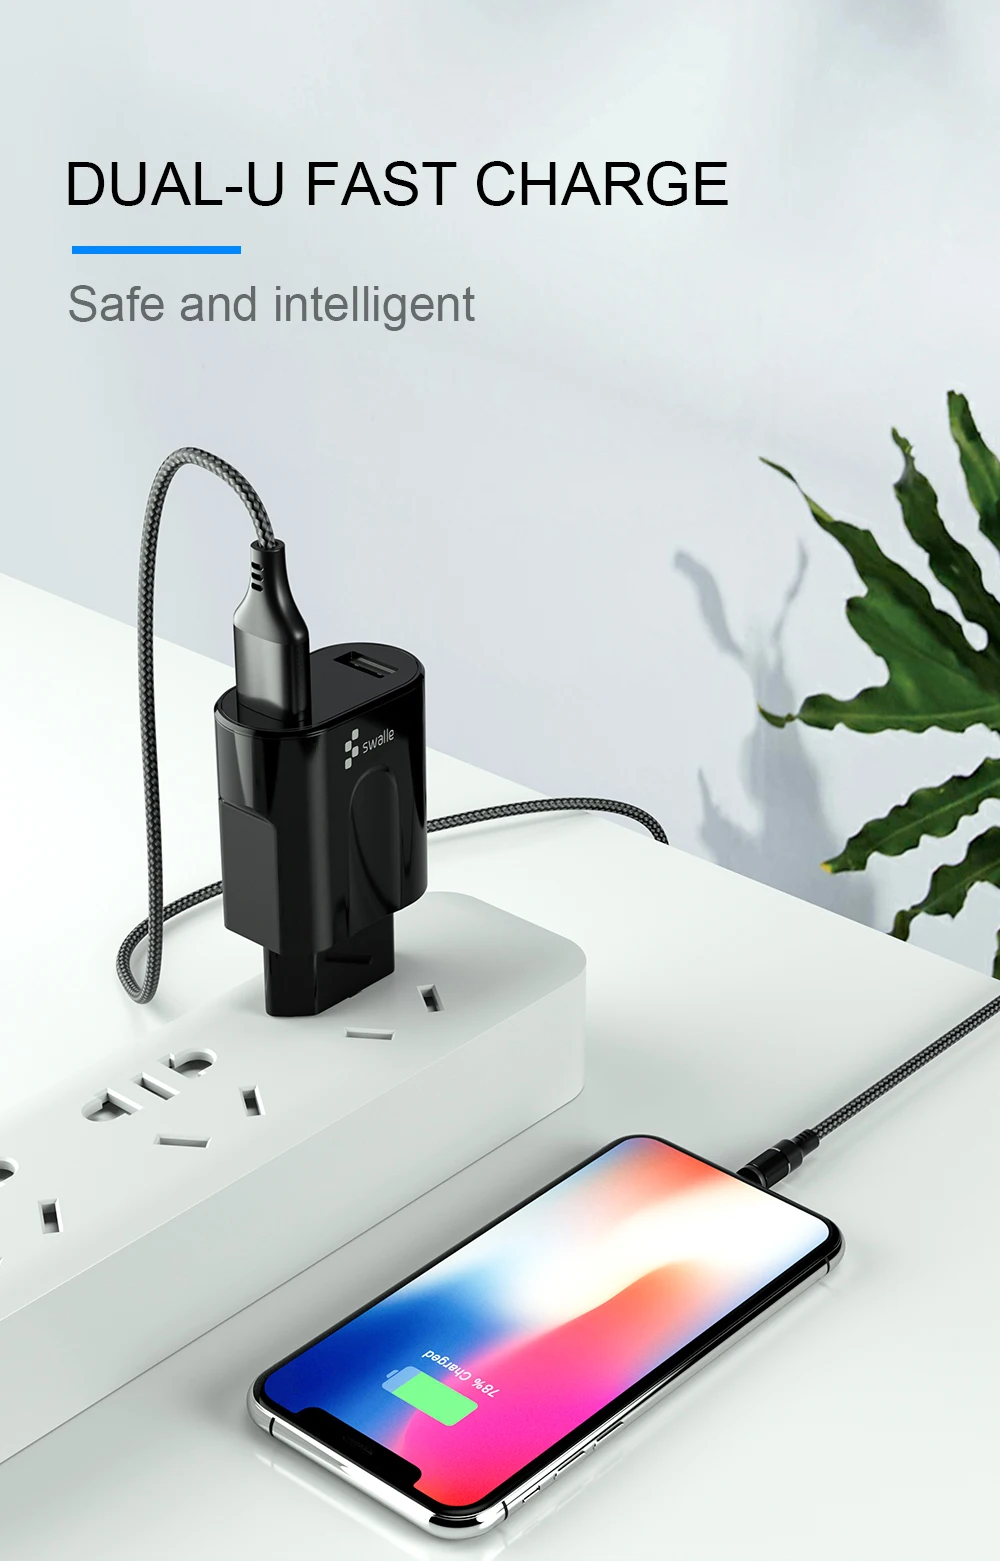 Swalle Dual USB зарядное устройство 5 В 3.1A Быстрая зарядка для iphone 7 8 мини настенное зарядное устройство для samsung адаптер EU зарядное устройство для Xiaomi